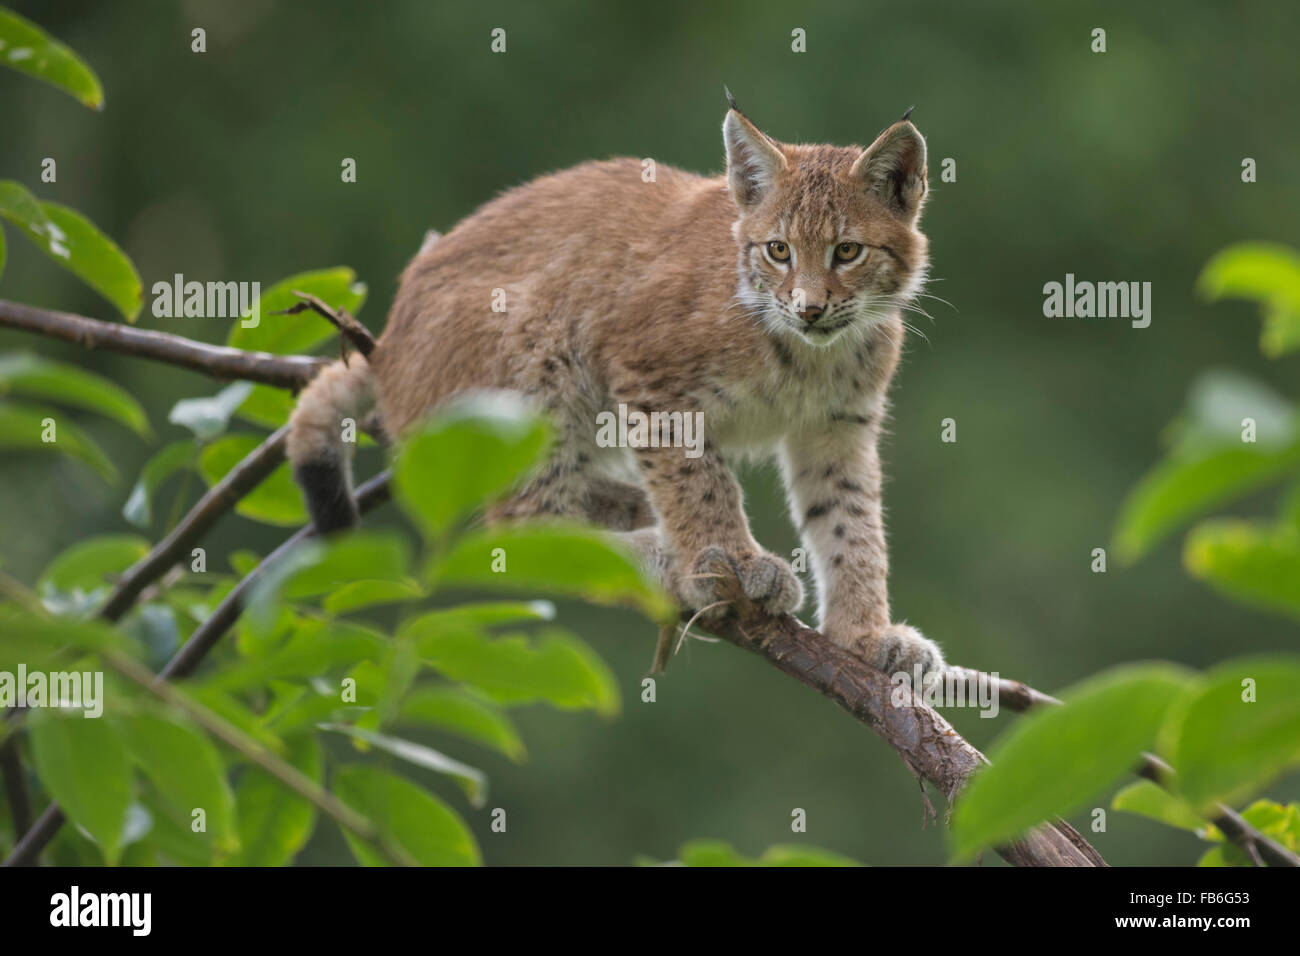 Lindo cachorro de lince euroasiático / Eurasischer Luchs ( Lynx lynx ) se asienta en una rama delgada, mira concentrado. Foto de stock